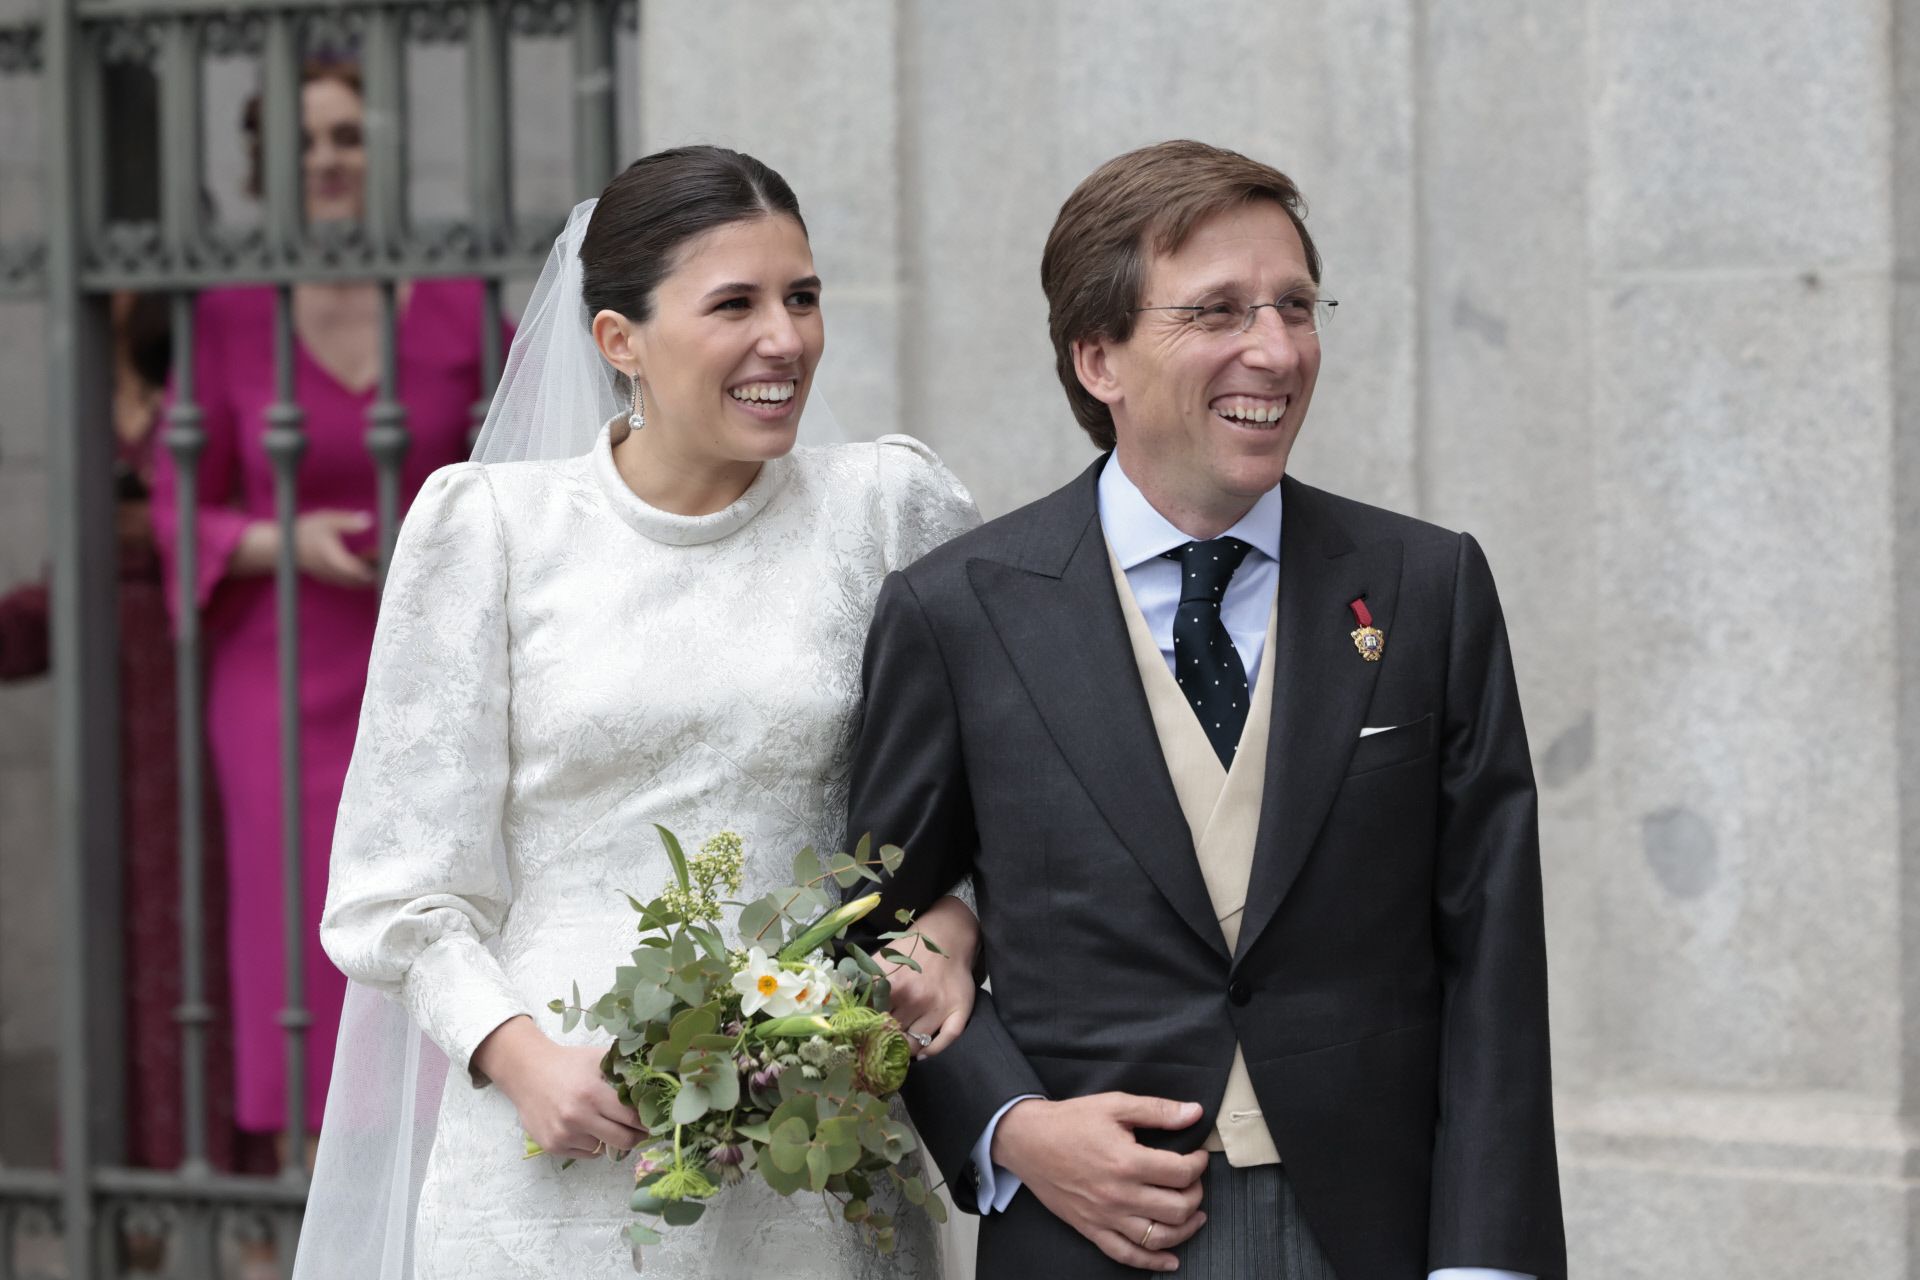 La foto de boda de José Luis Martínez Almeida y Teresa Urquijo